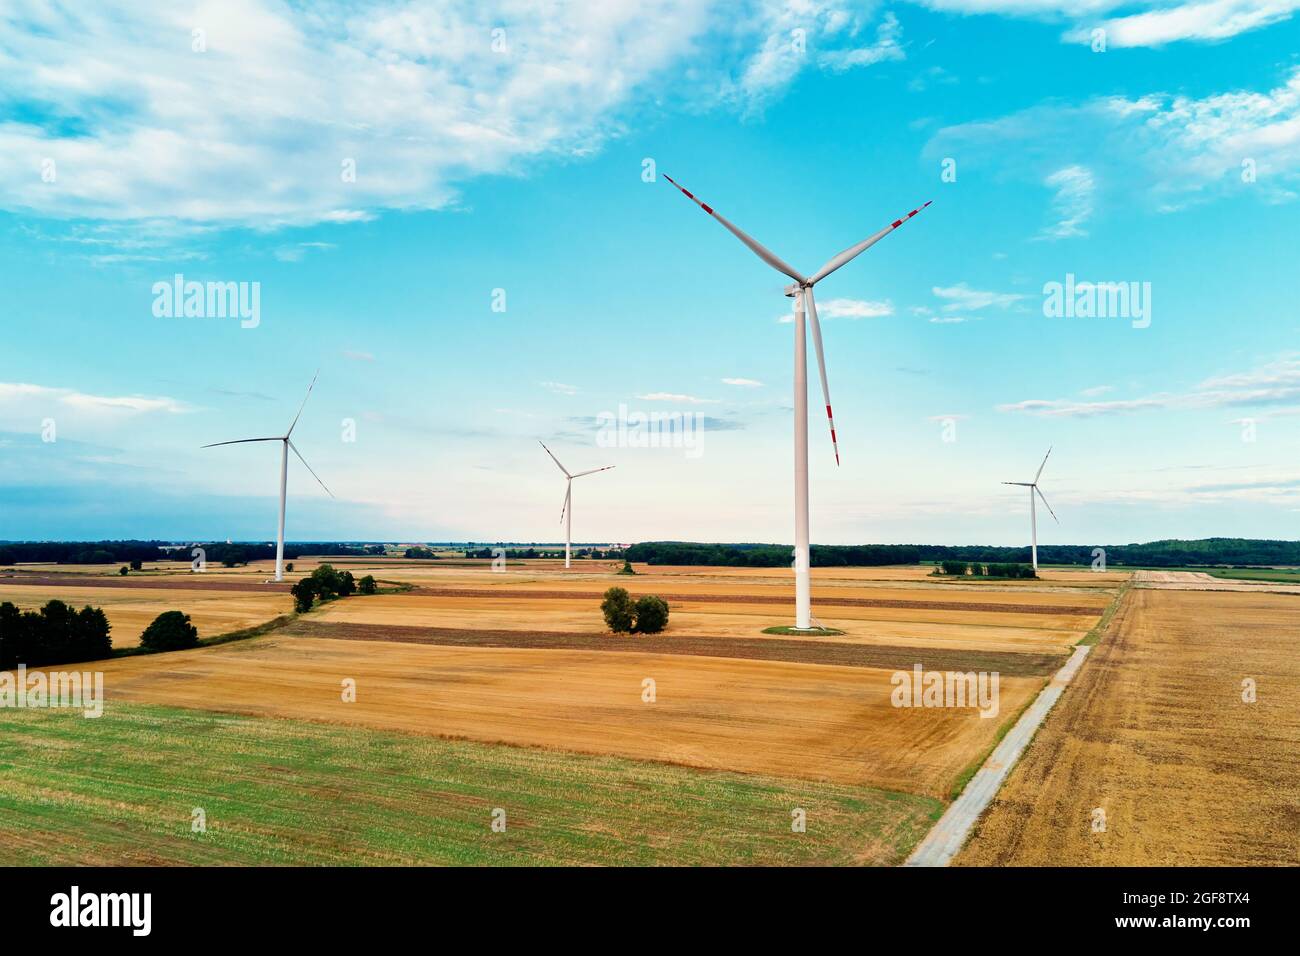 Moulin parmi les champs agricoles. Générateur d'éolienne à la journée d'été. Concept de l'énergie éolienne, énergie renouvelable et suistanable pour la protection du climat Banque D'Images